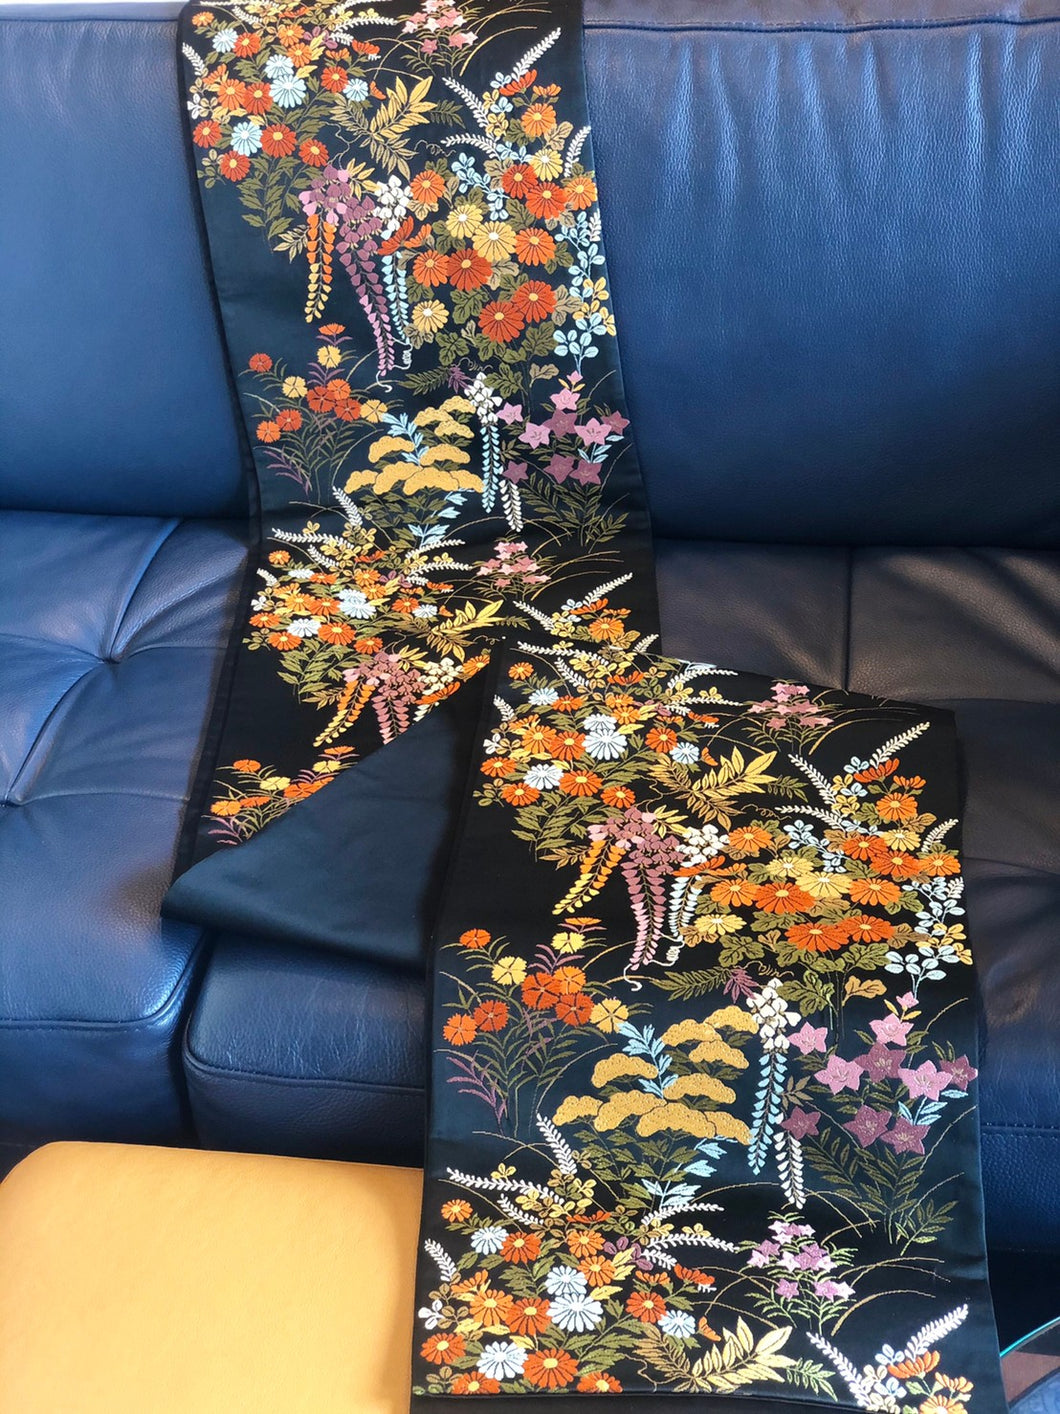 Vintage Obi Belt with Seasonal Embroidered Flowers